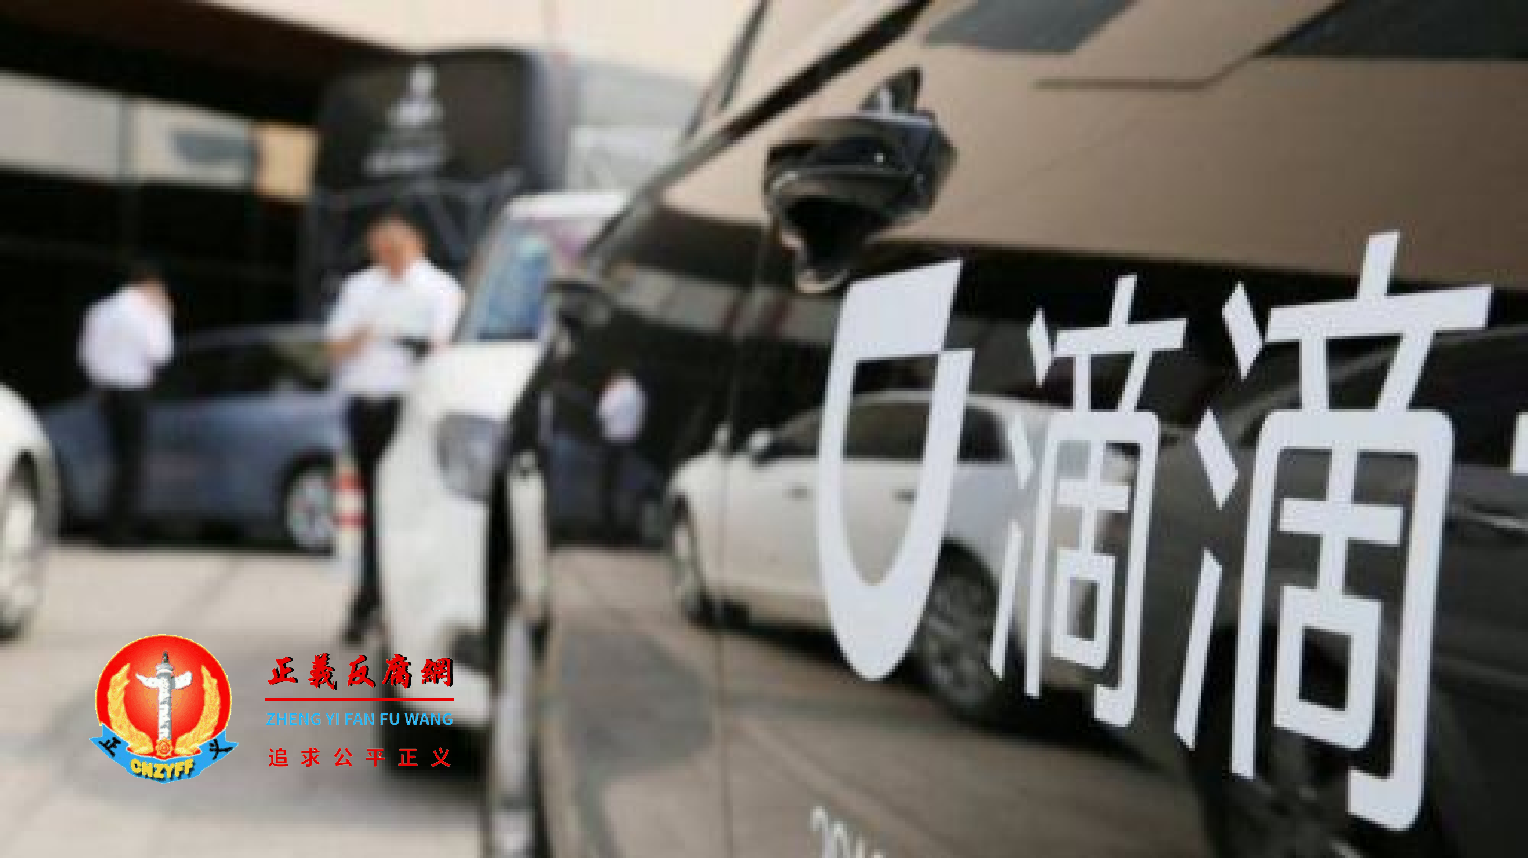 中国最大网约车公司“滴滴出行”的标志。.png